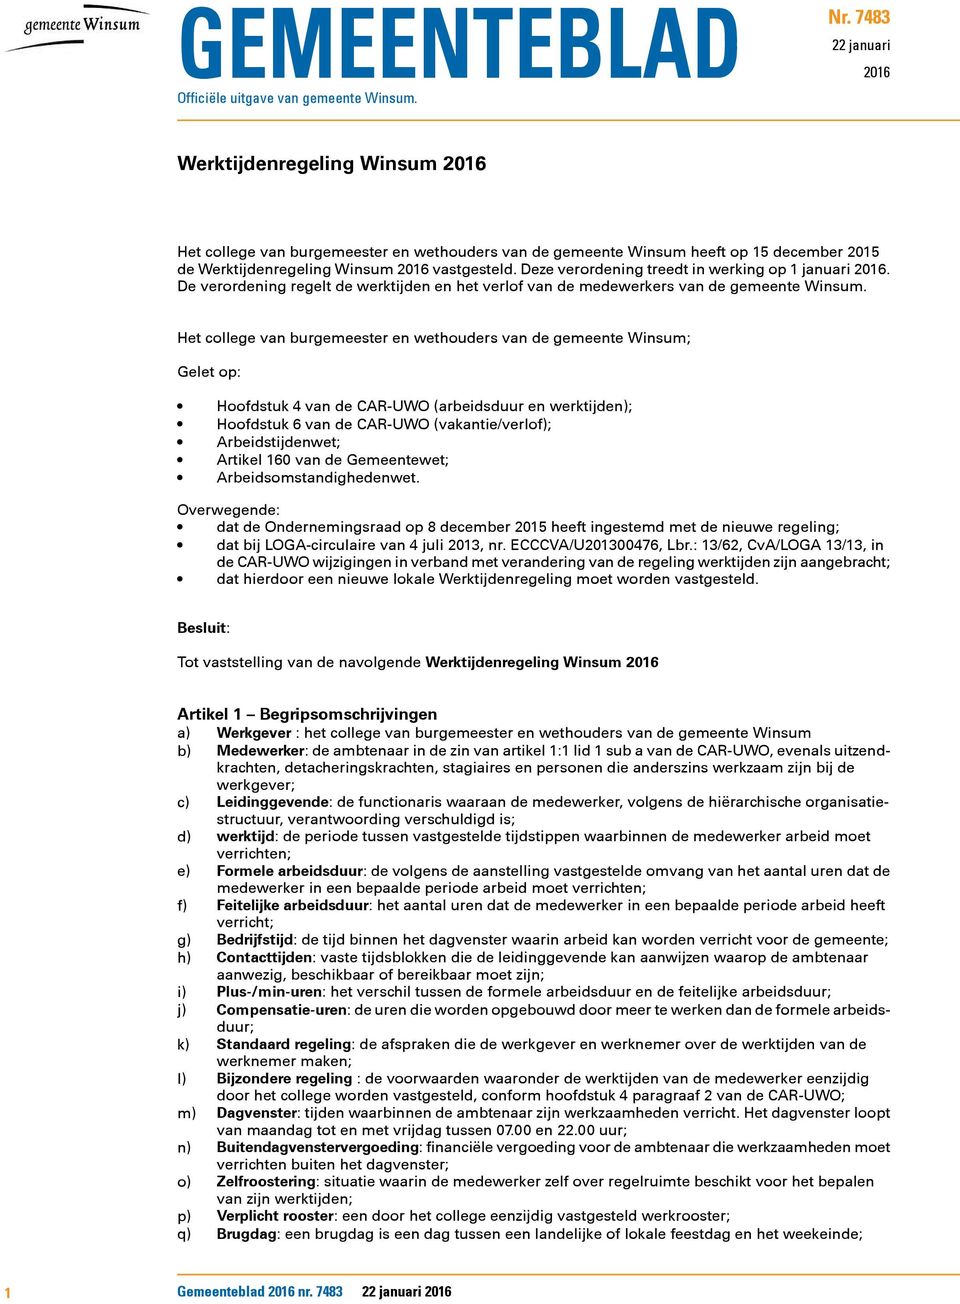 Deze verordening treedt in werking op 1 januari 2016. De verordening regelt de werktijden en het verlof van de medewerkers van de gemeente Winsum.